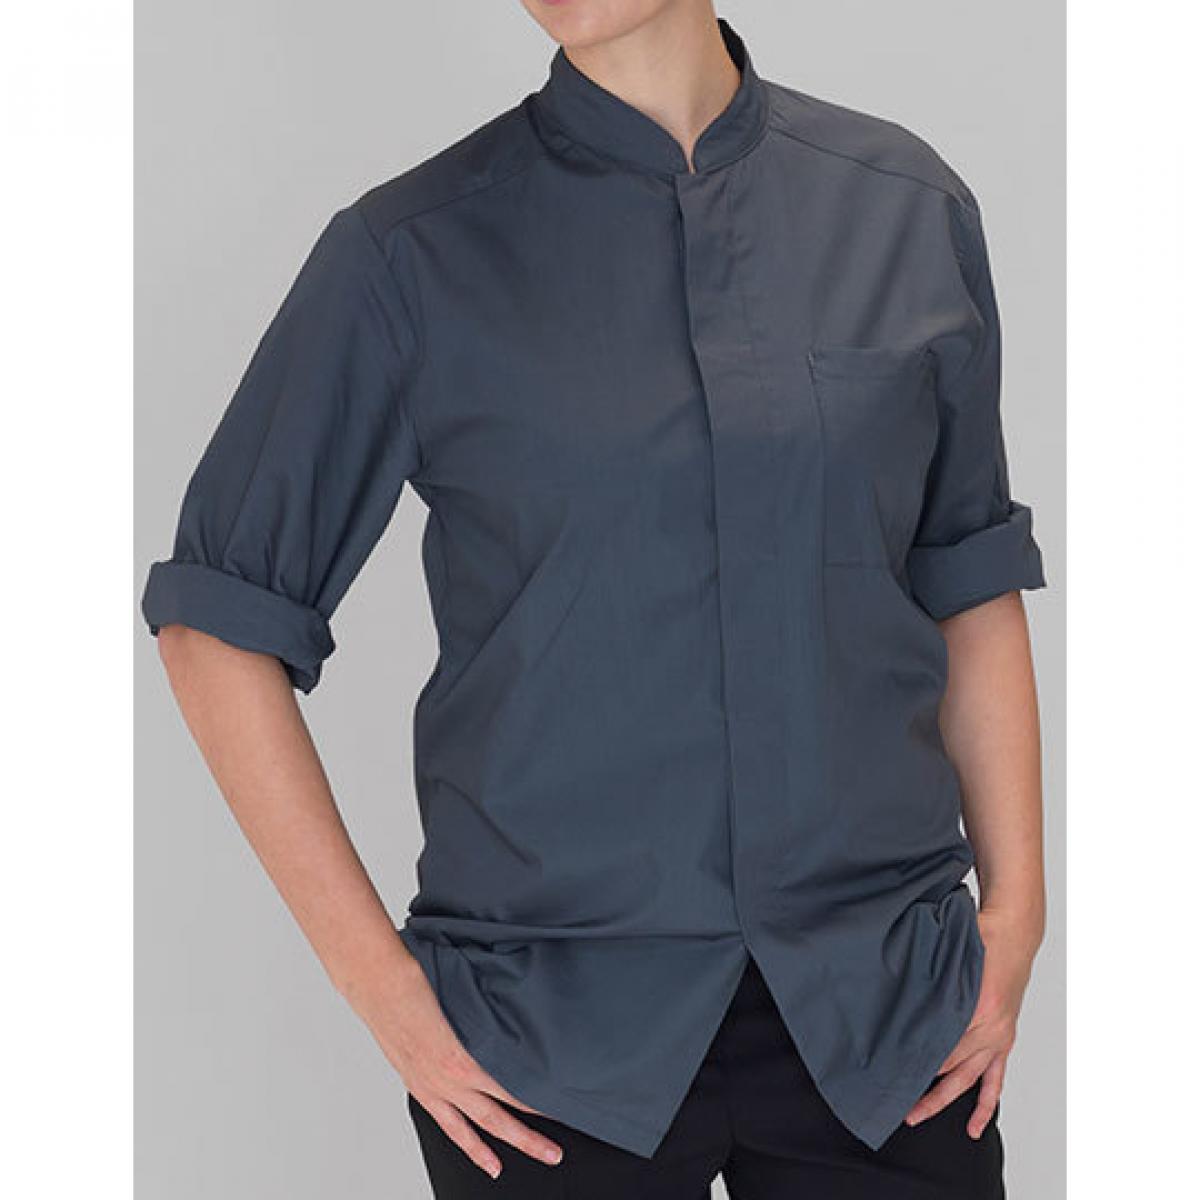 Hersteller: Le Chef Prep Herstellernummer: DF120F Artikelbezeichnung: Koch-Kittel Ladies Prep Shirt Farbe: Storm Grey/Black